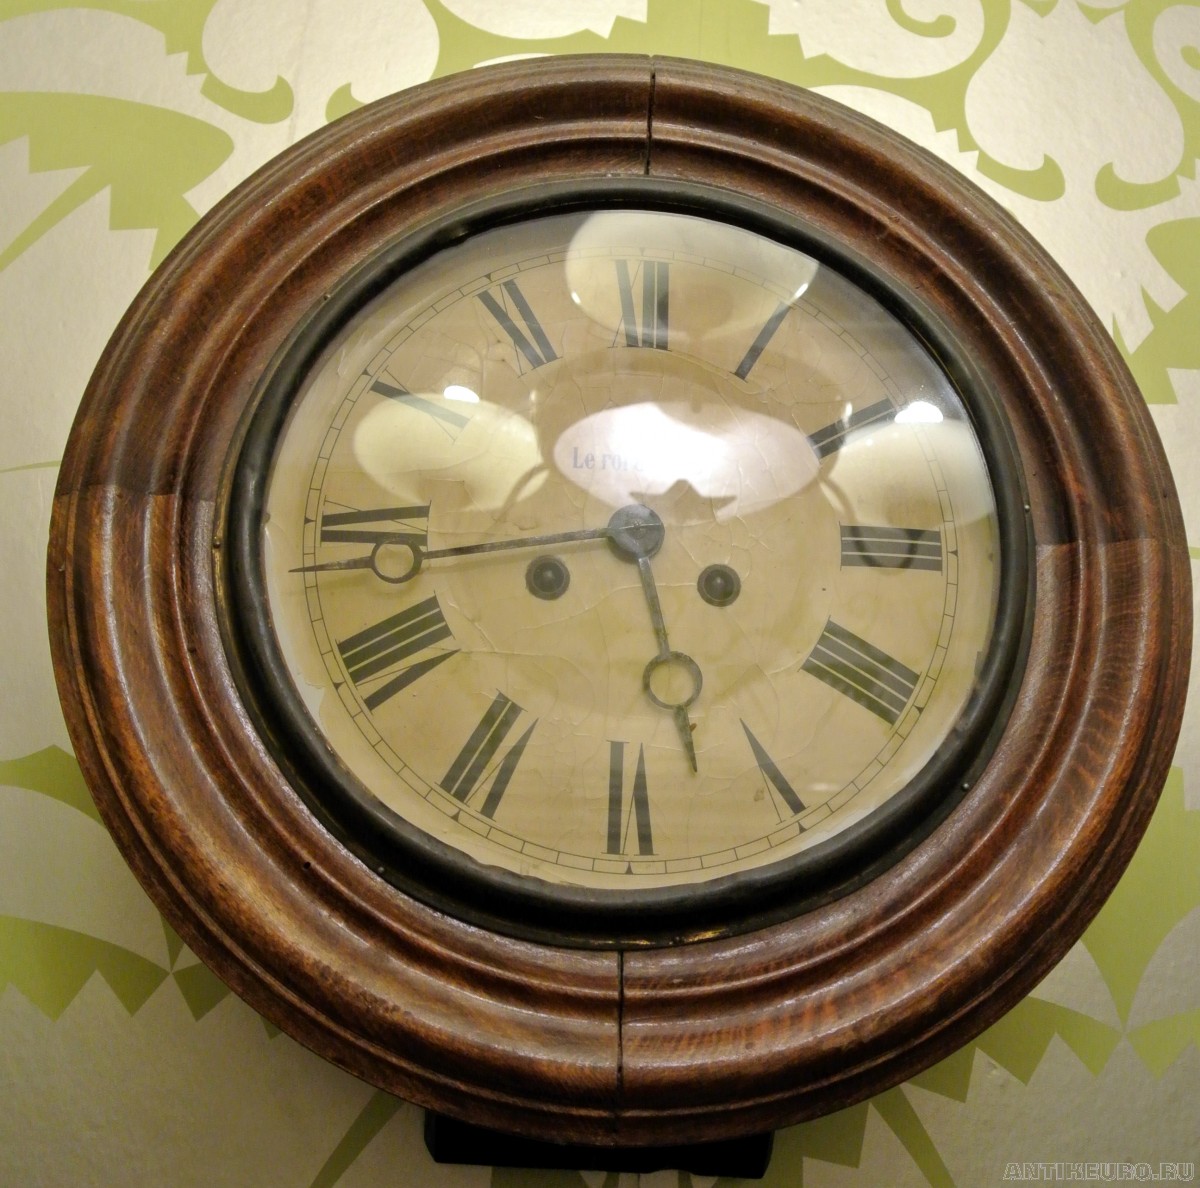 Круглый корпус часов. Le roi a Paris круглые. Старинные настенные часы. Часы старинные настенные круглые. Часы настенные Антикварные круглые.